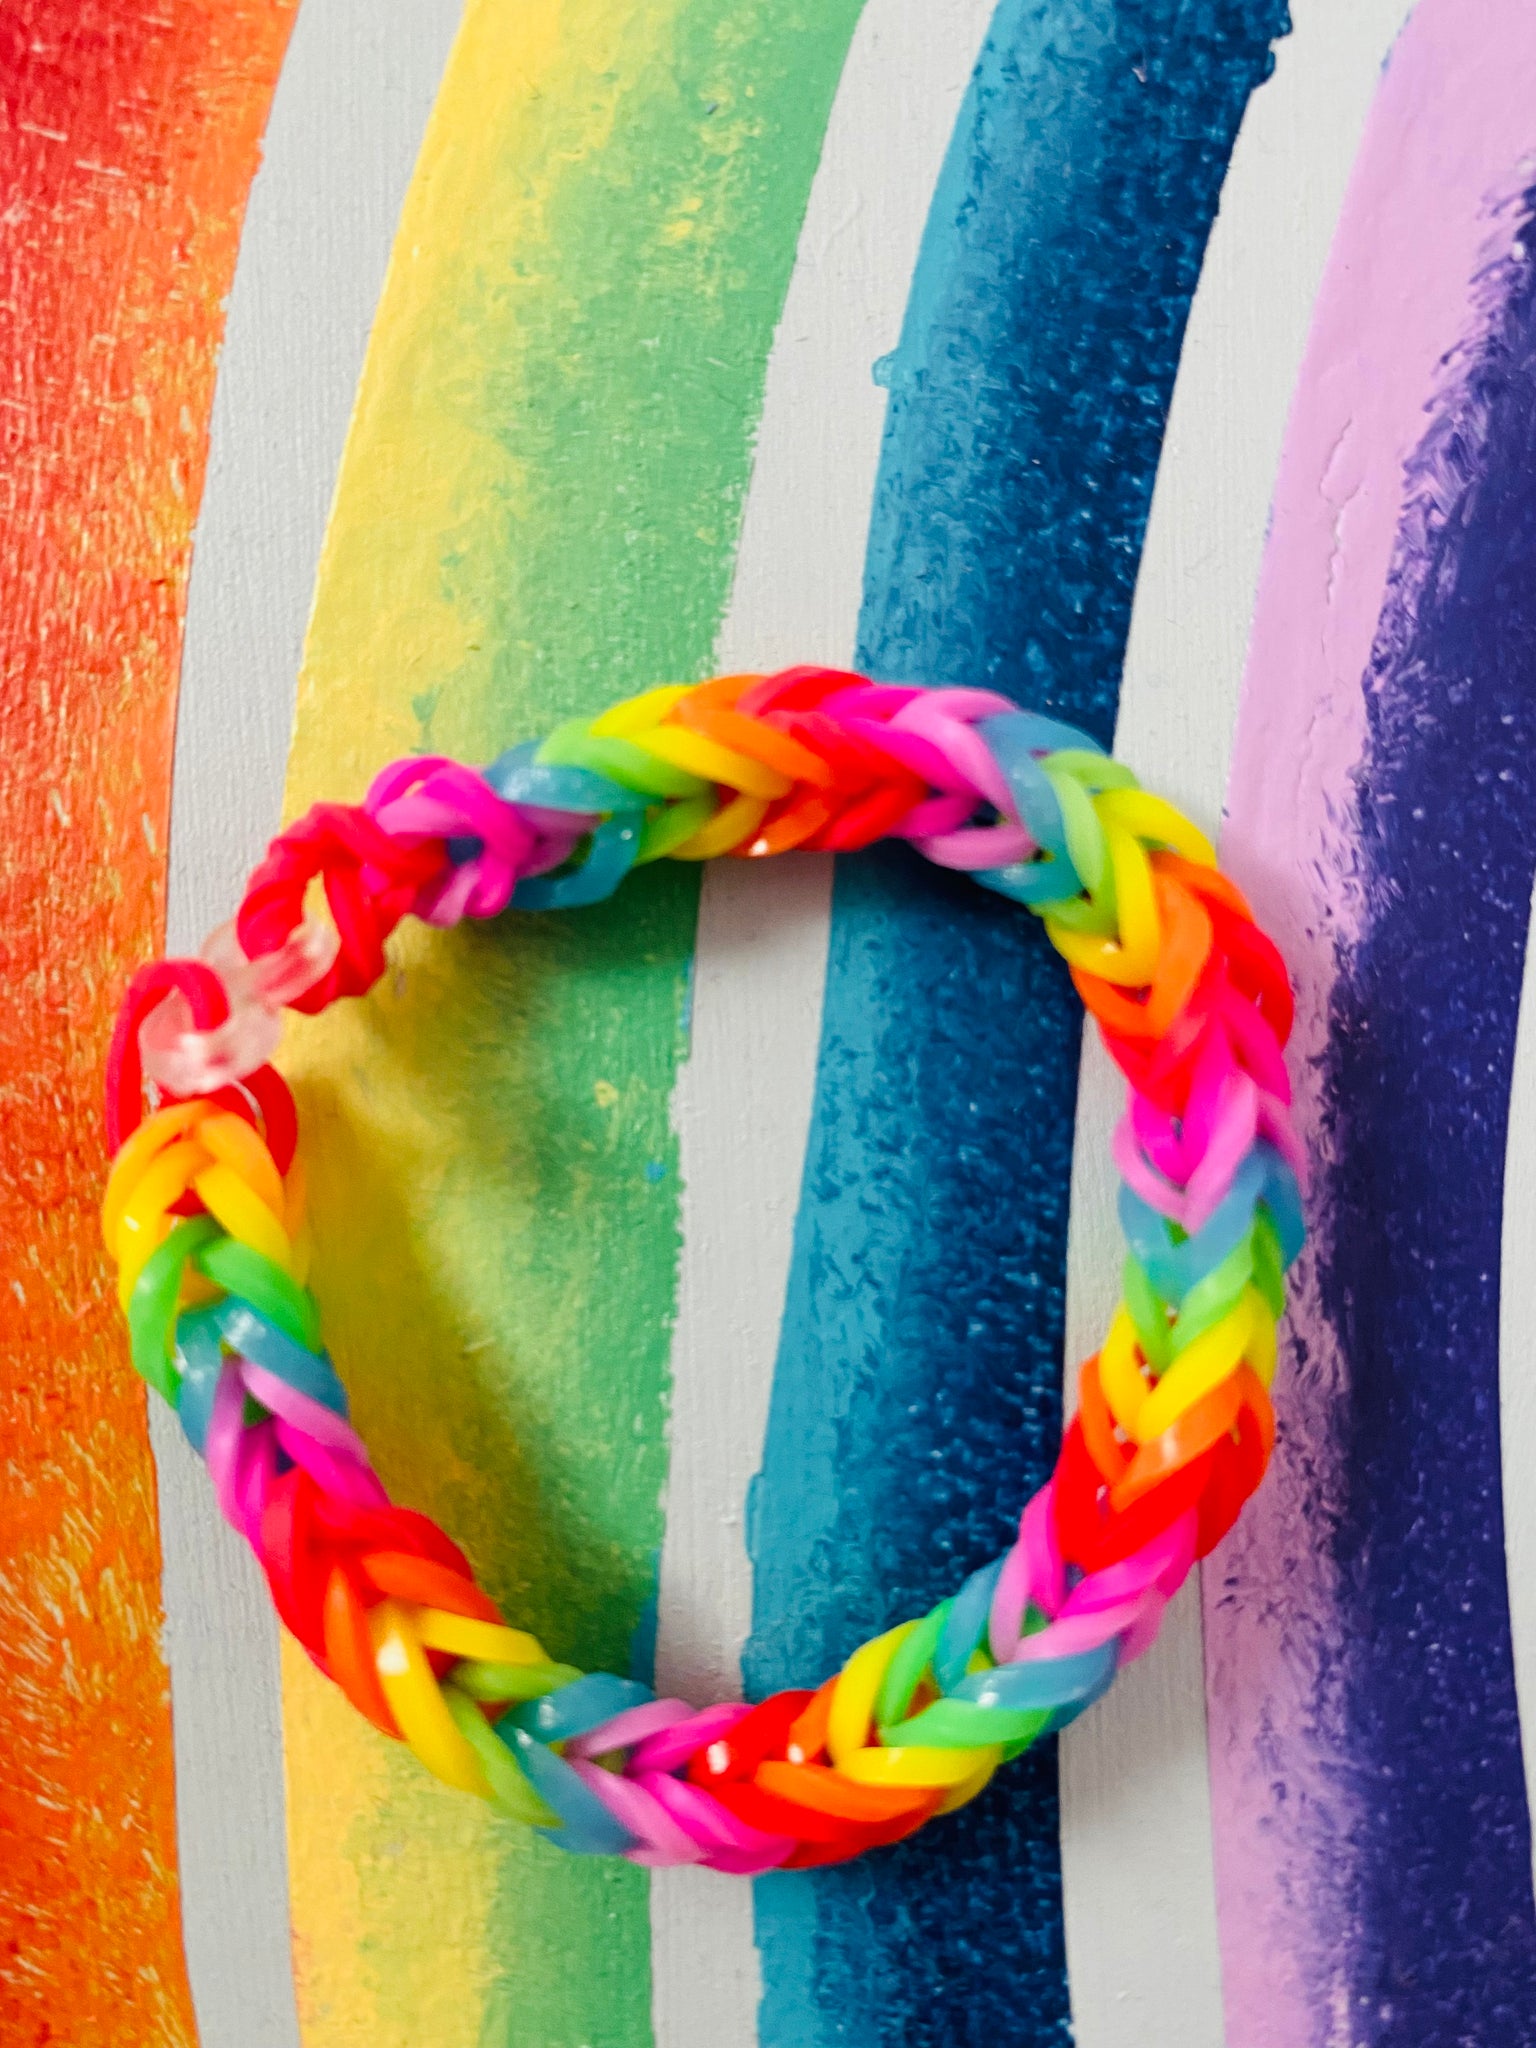 9 Ways to Make a Rainbow Loom Bracelet - wikiHow